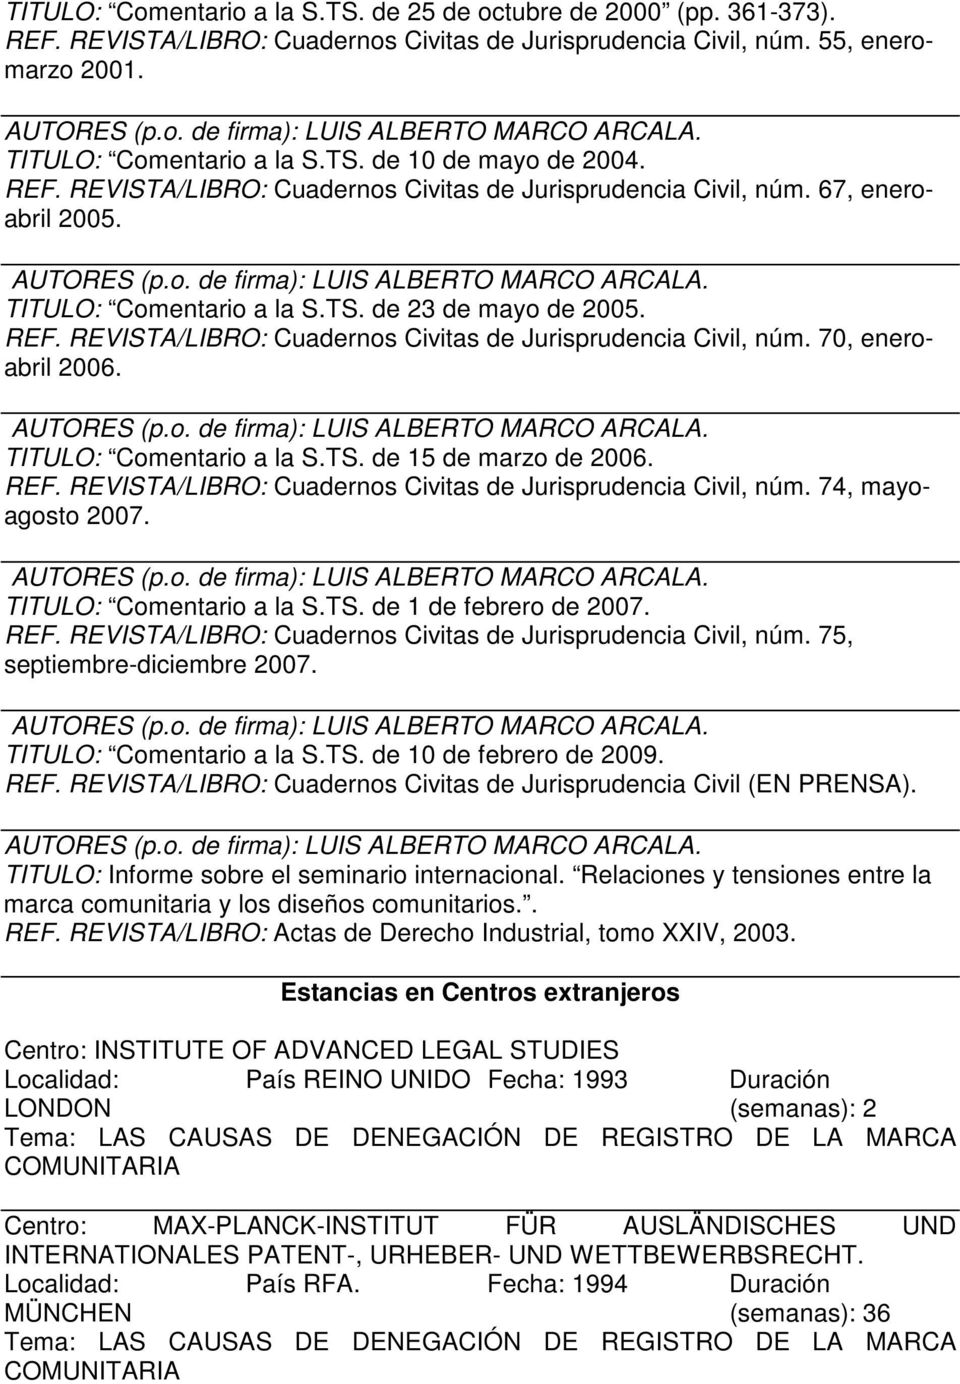 REVISTA/LIBRO: Cuadernos Civitas de Jurisprudencia Civil, núm. 70, eneroabril 2006. TITULO: Comentario a la S.TS. de 15 de marzo de 2006. REF.